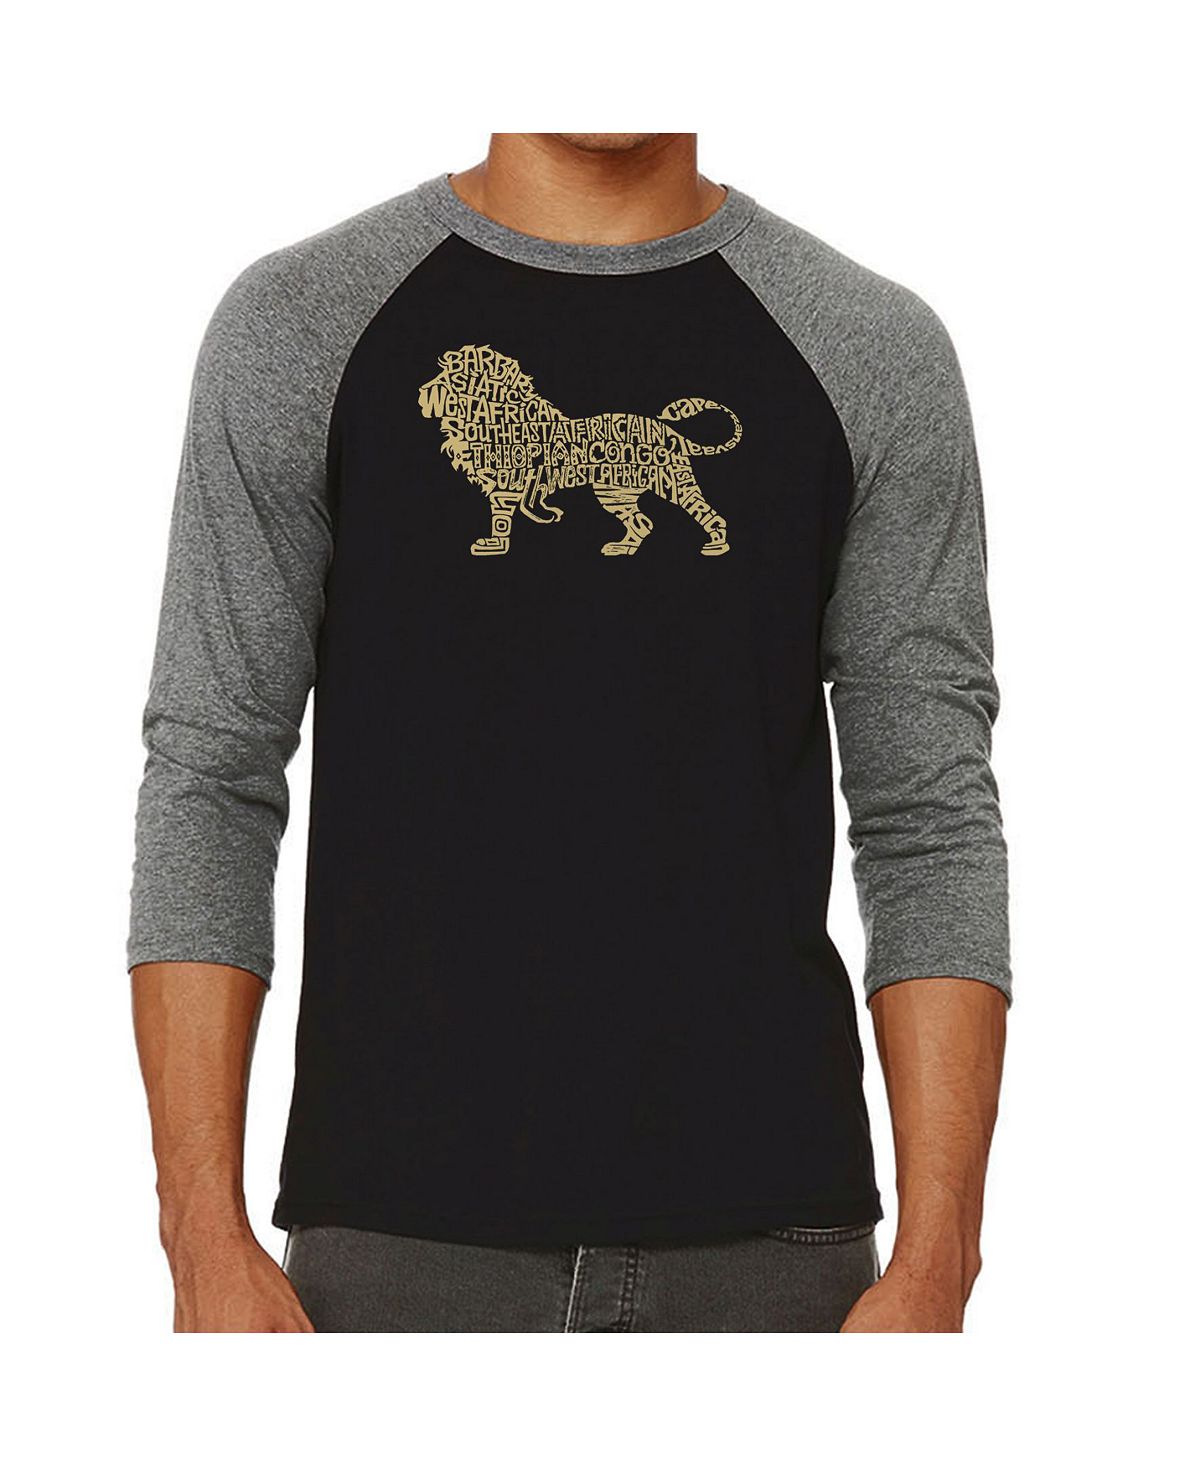 Мужская футболка с принтом lion и регланом word art LA Pop Art, серый